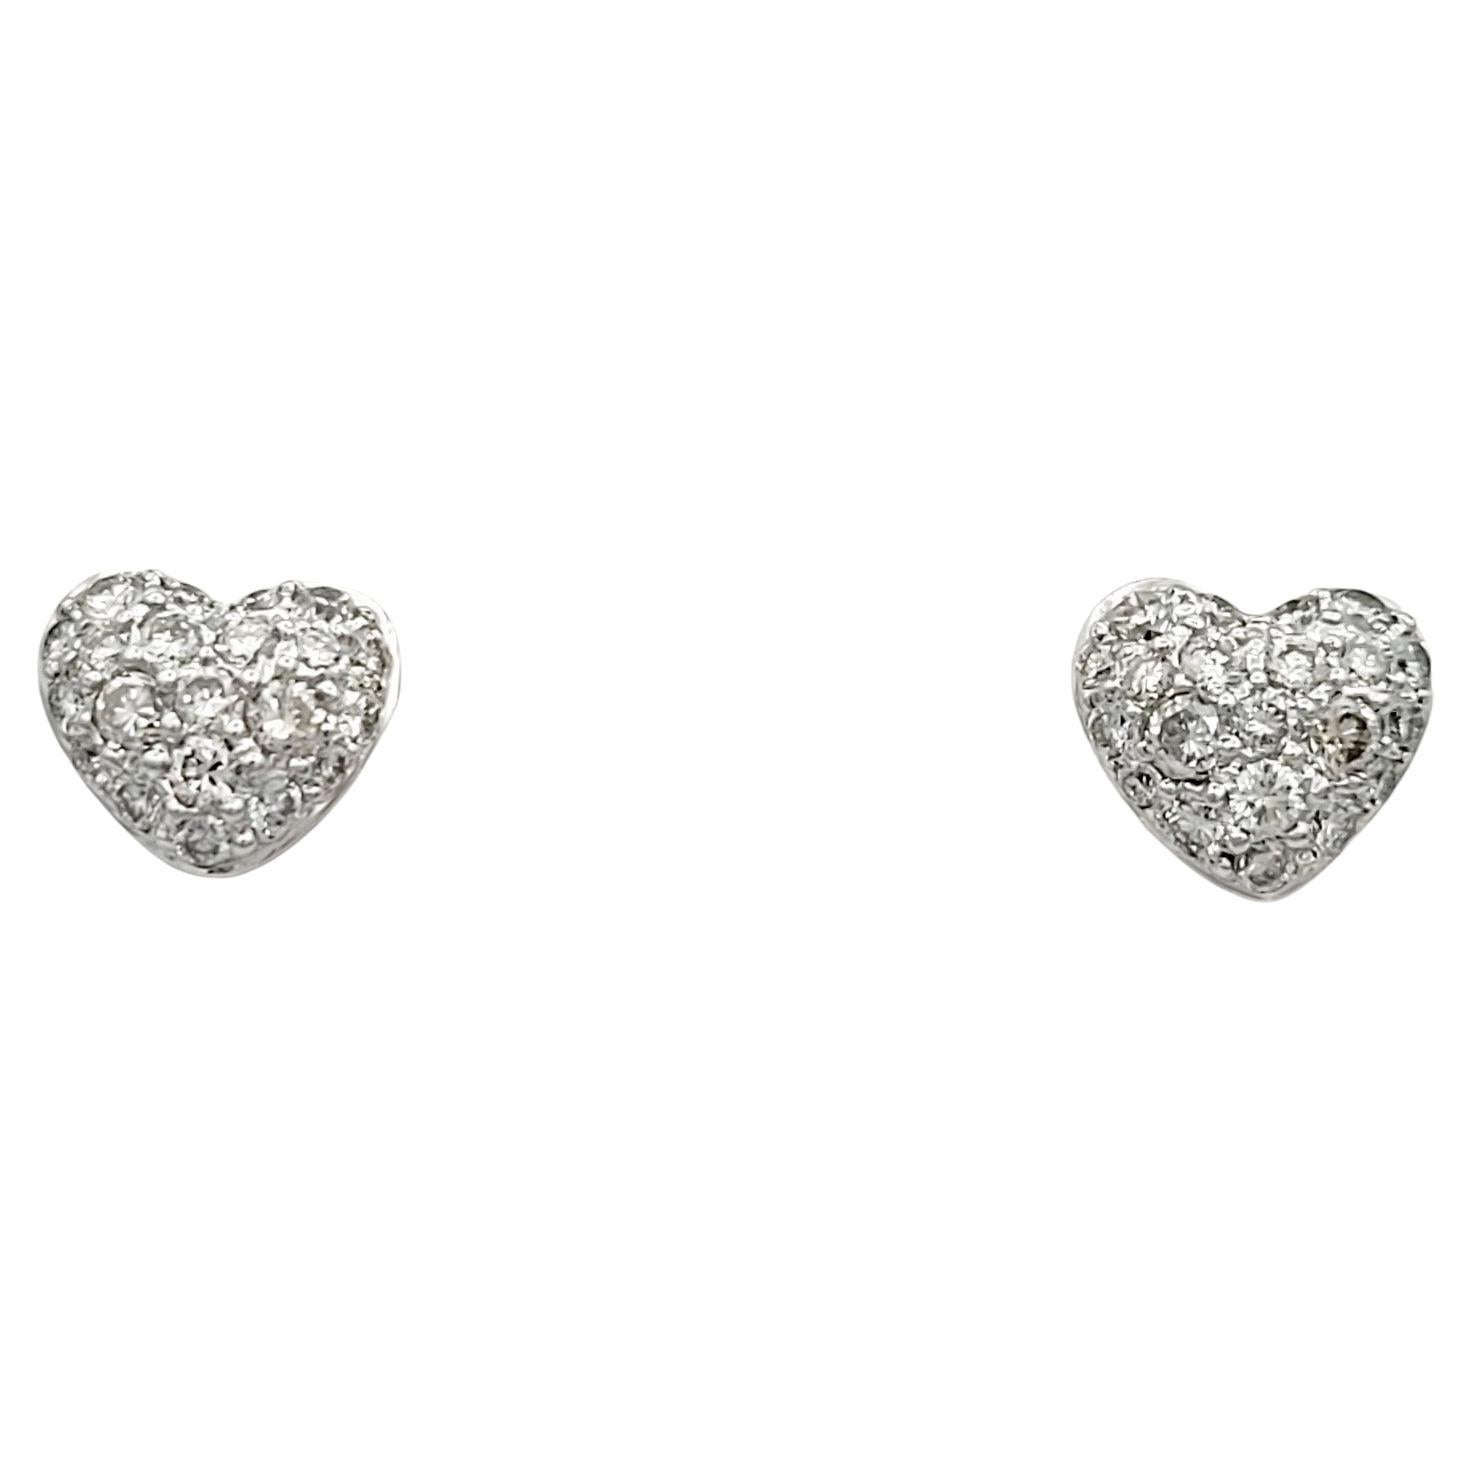 Diese Herz-Ohrstecker mit Pavé-Diamanten, gefasst in edlem 18-karätigem Weißgold, sind ein Symbol für zeitlose Romantik und Eleganz. Jeder Ohrring hat die Form eines zarten Herzens, das mit Diamanten in Pavé-Fassung besetzt ist und so eine